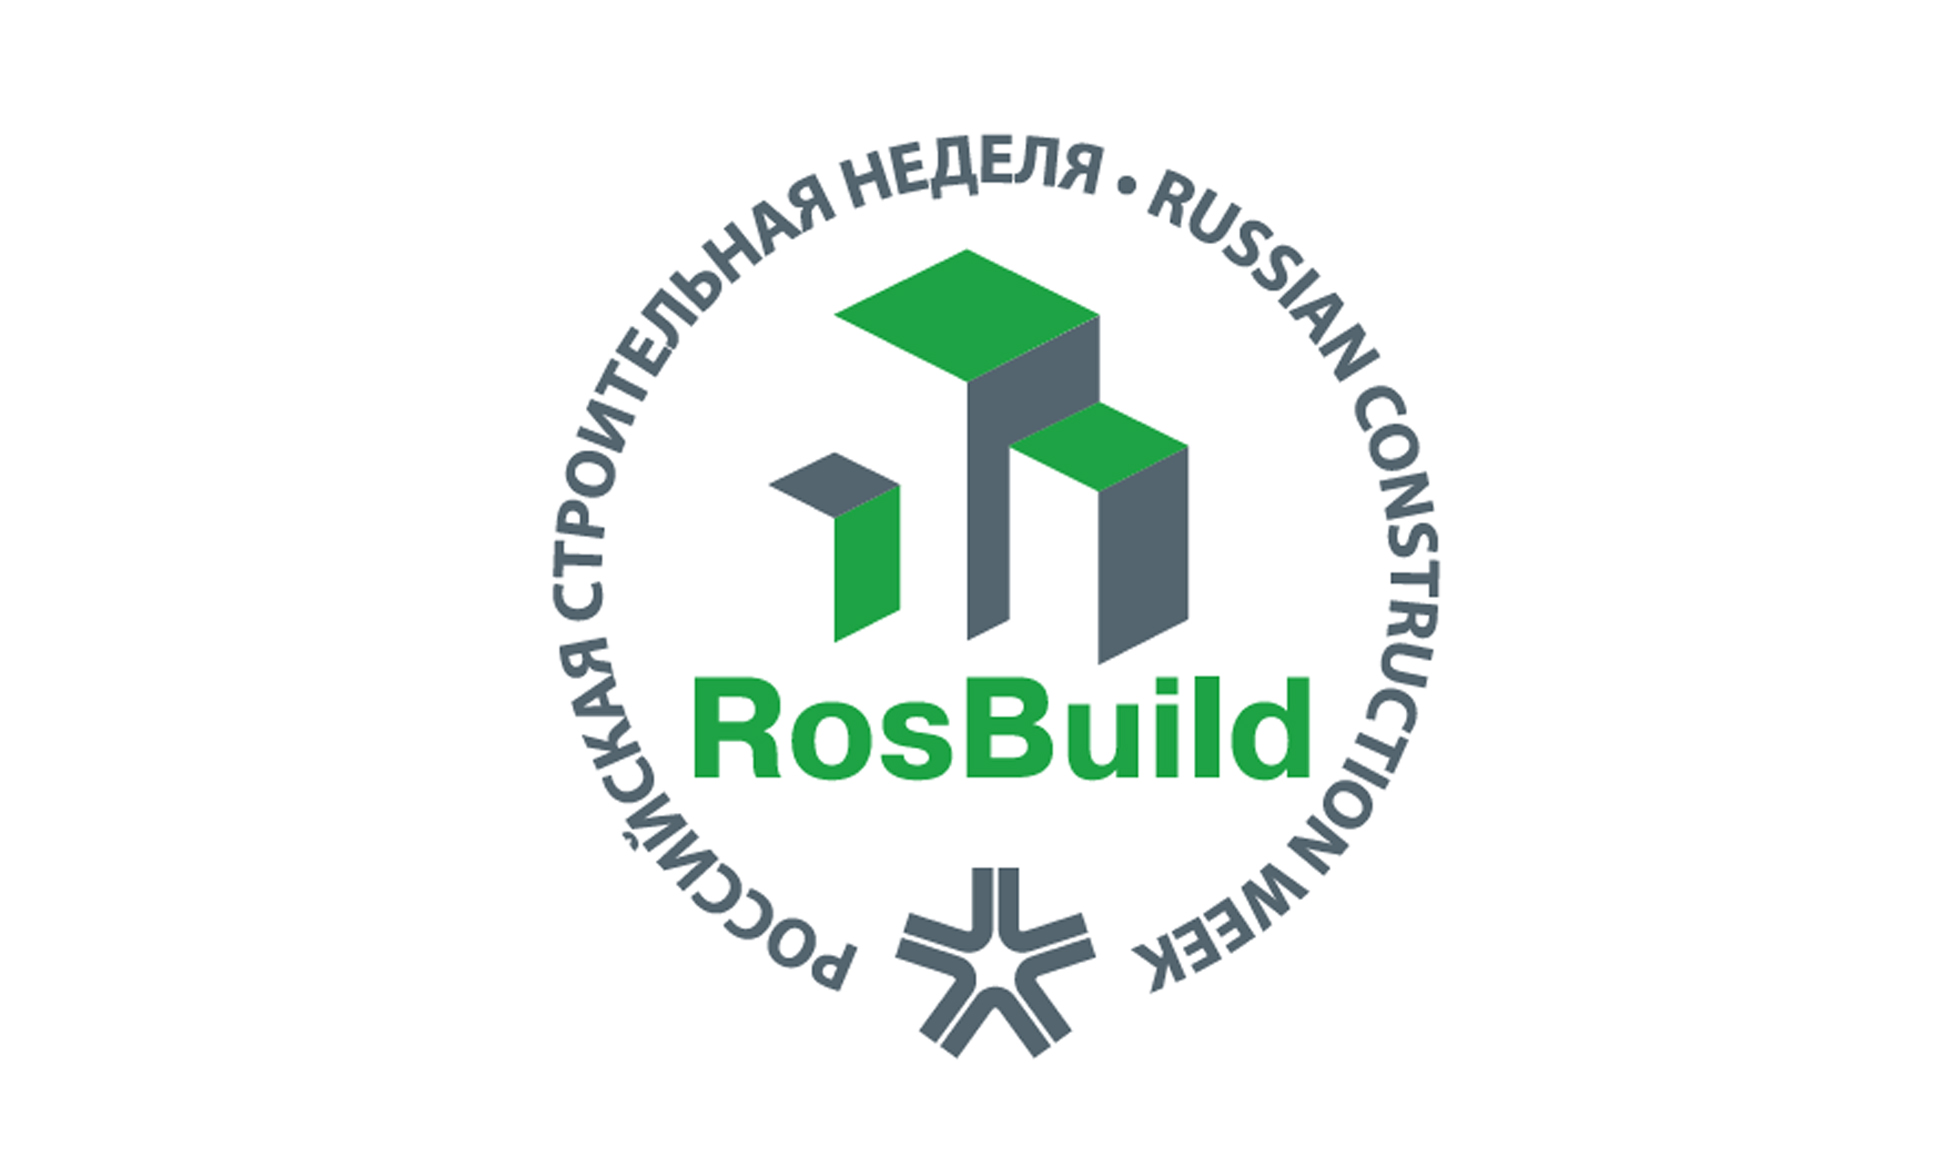 Русэкосвет примет участие в деловой программе Российской строительной недели